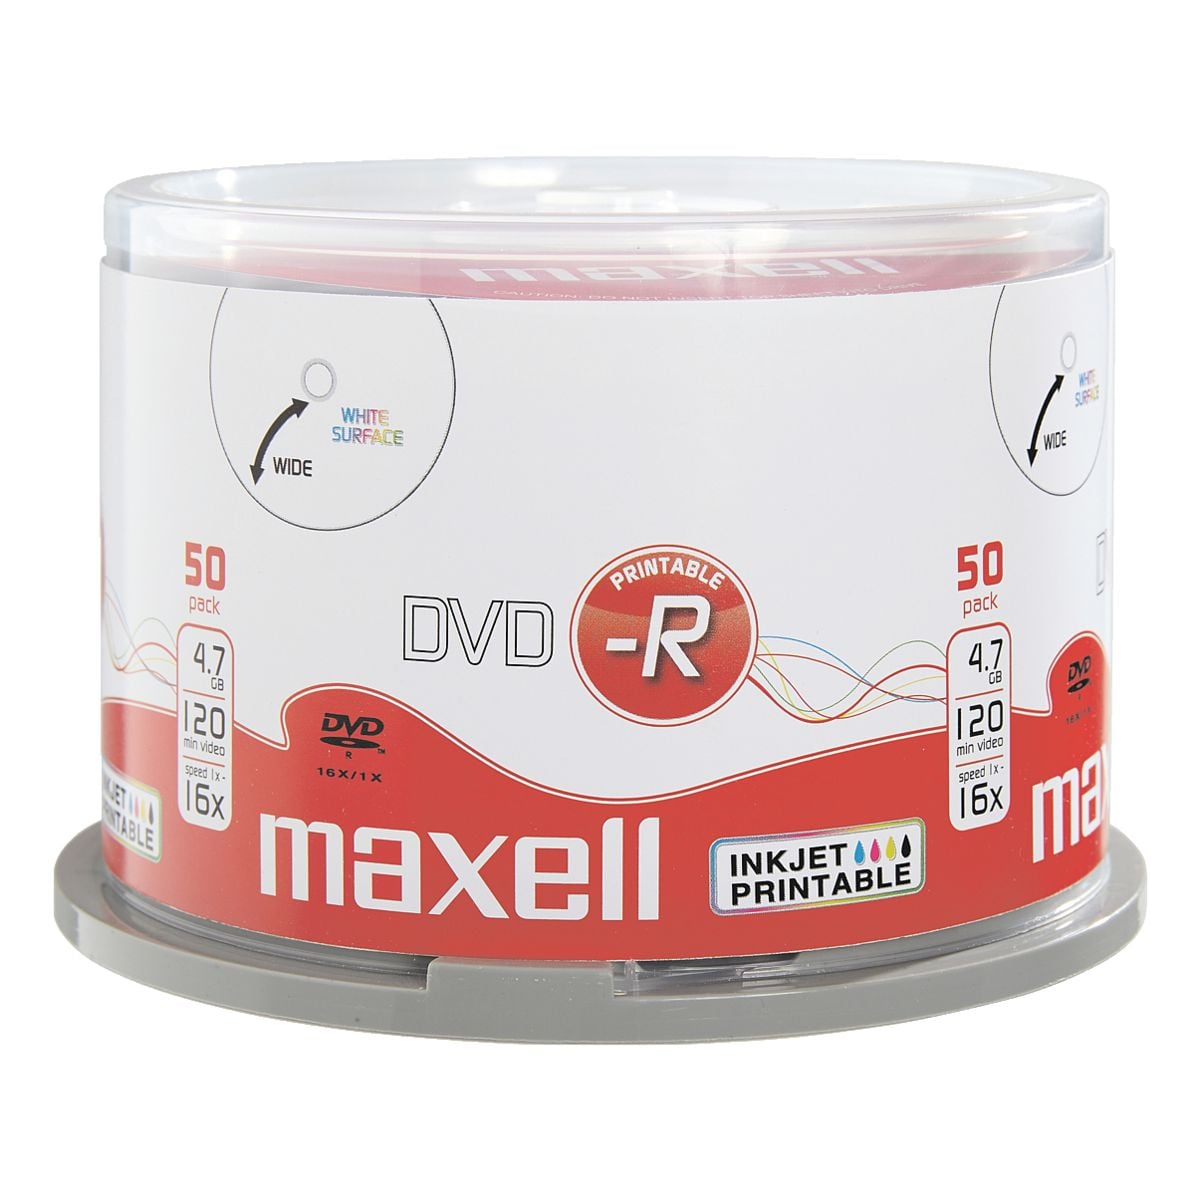 Maxell DVD-Rohlinge »DVD-R printable« mit Inkjet bedruckbar